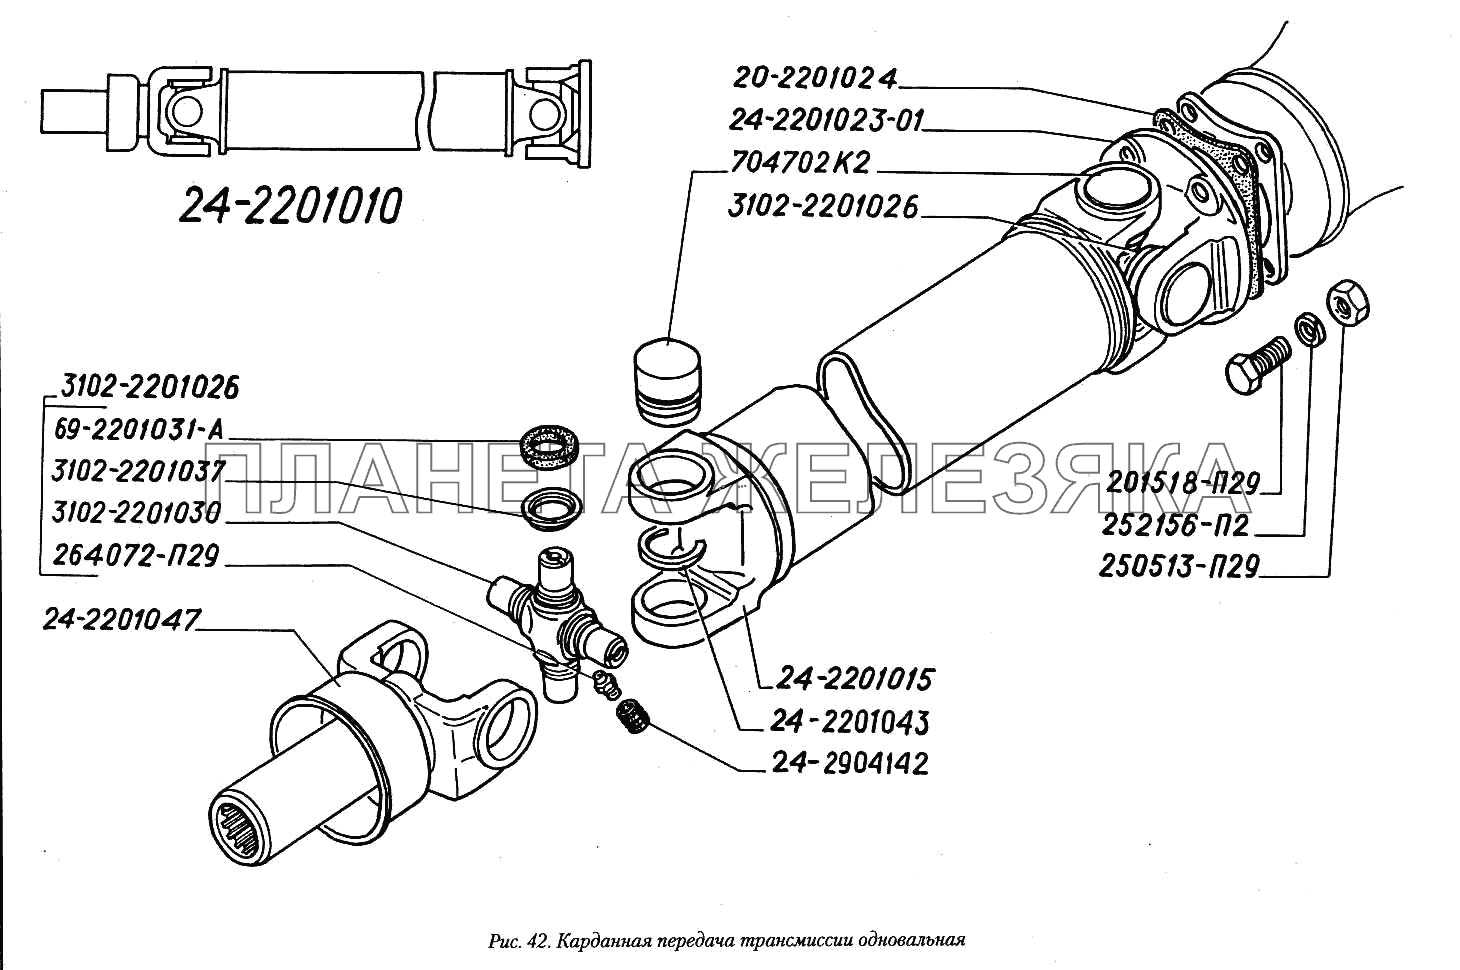 Карданная передача трансмиссии одновальная ГАЗ-3110